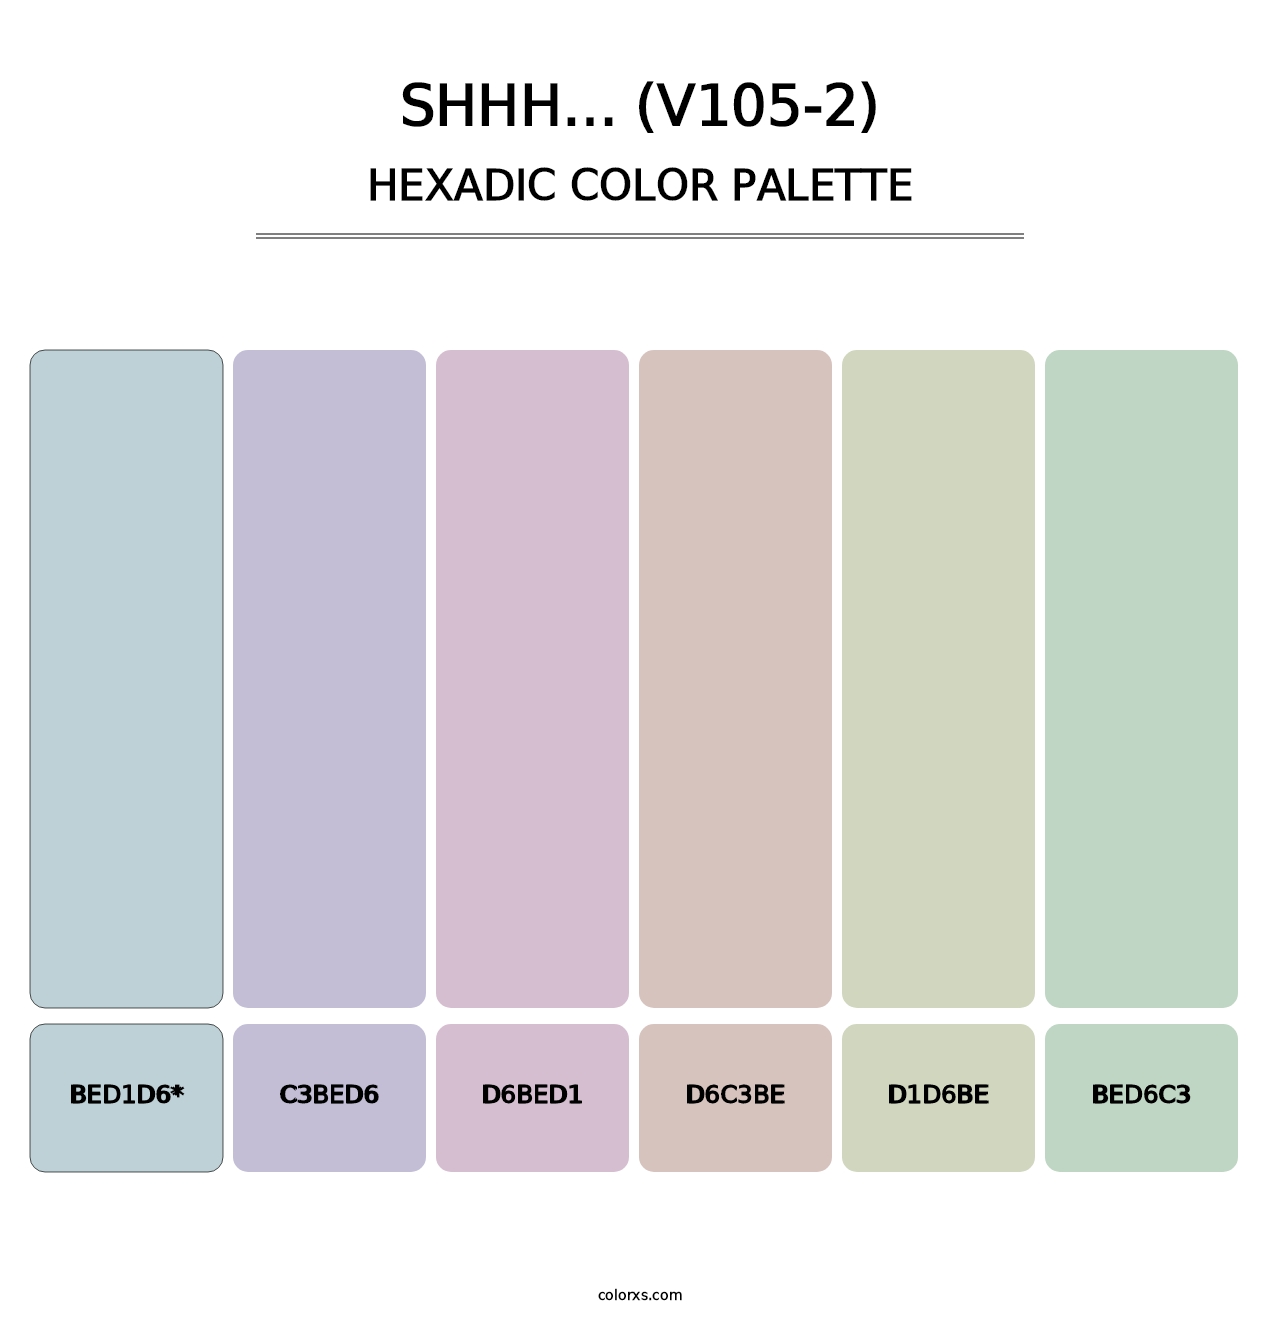 Shhh… (V105-2) - Hexadic Color Palette